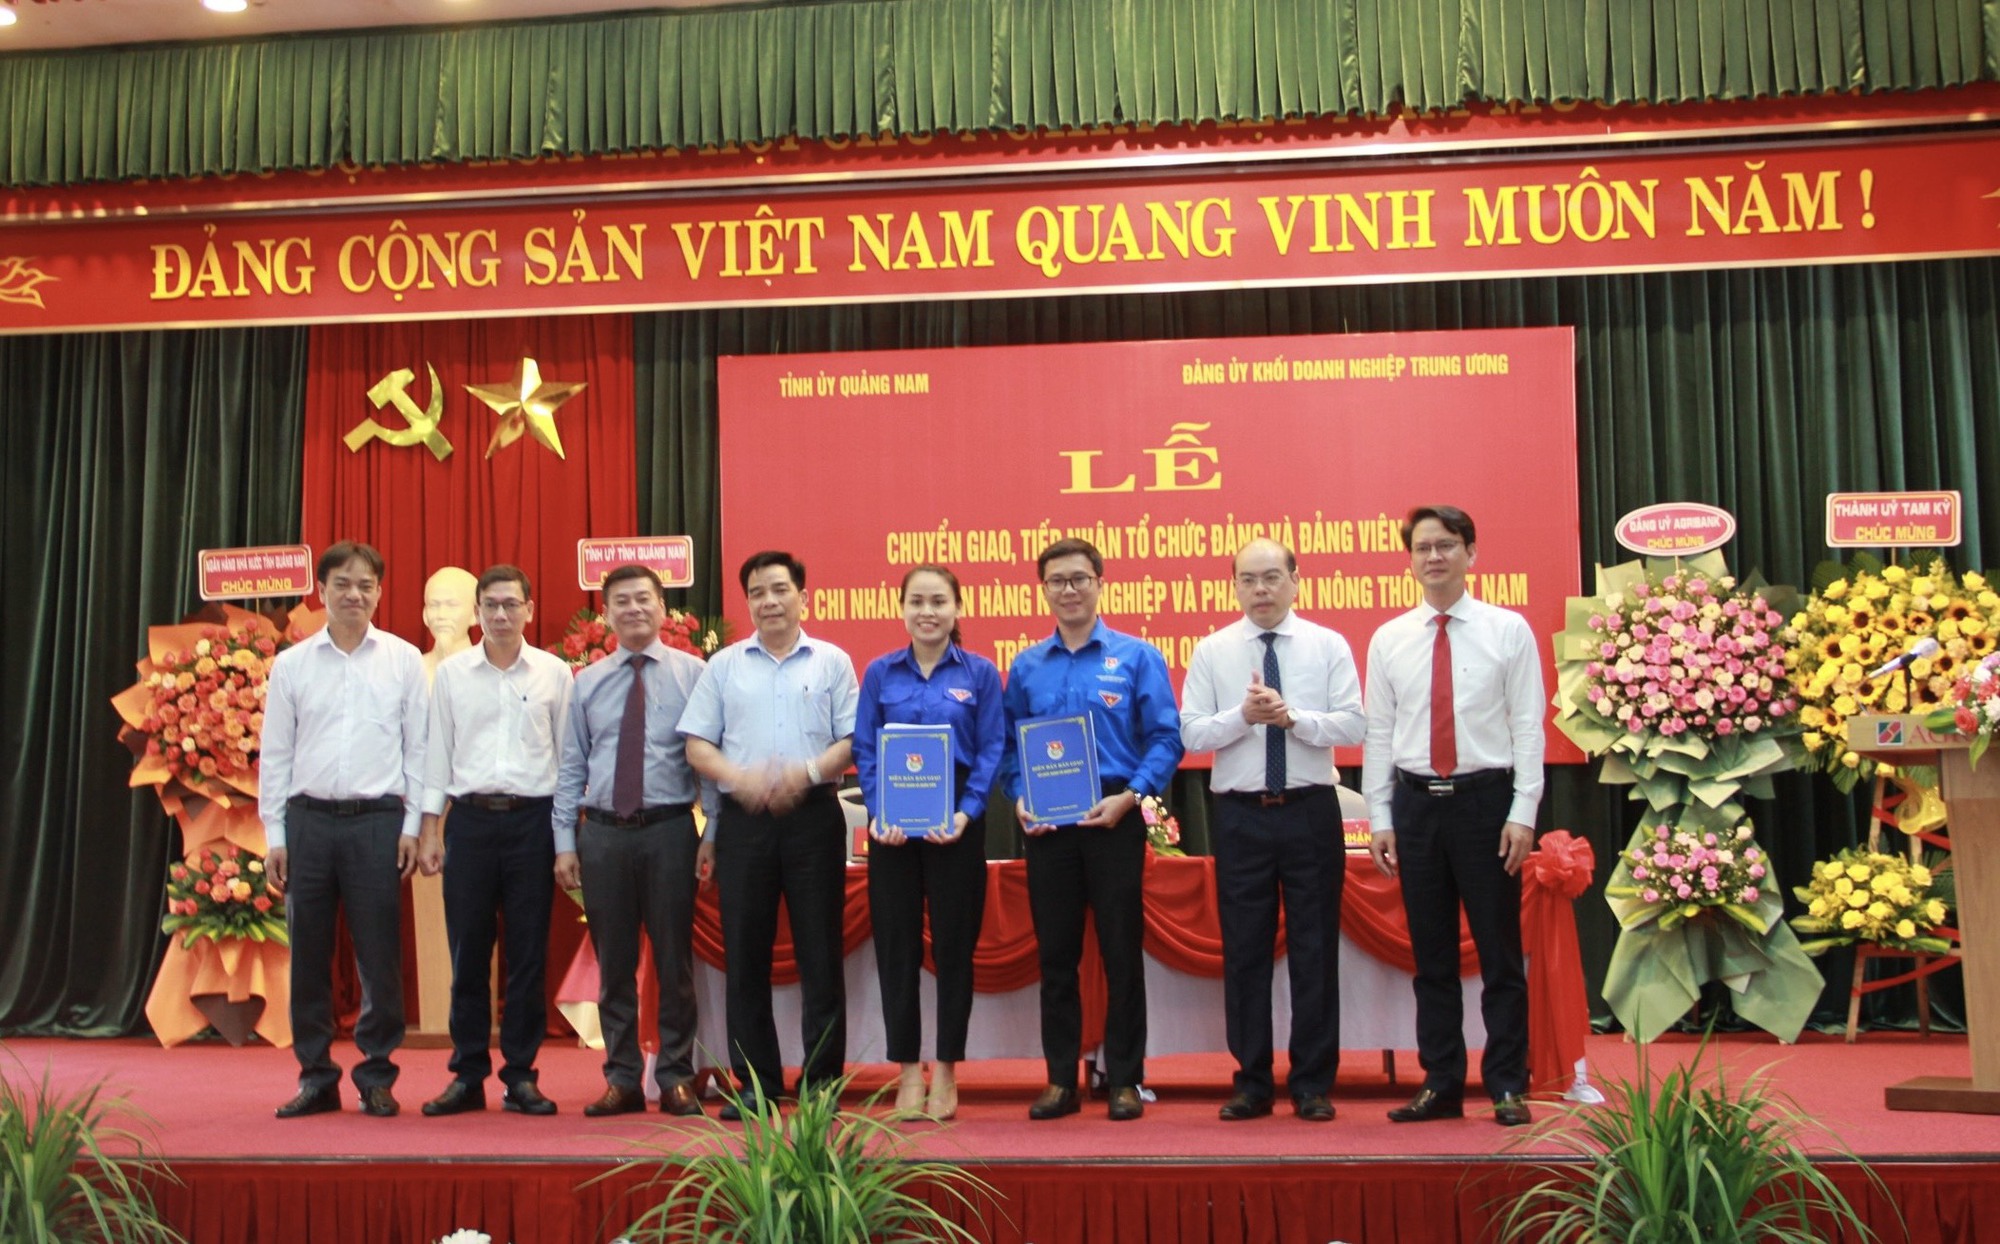 Lễ chuyển giao – tiếp nhận tổ chức đảng, đảng viên trong các Chi nhánh Agribank trên địa bàn tỉnh Quảng Nam - Ảnh 6.